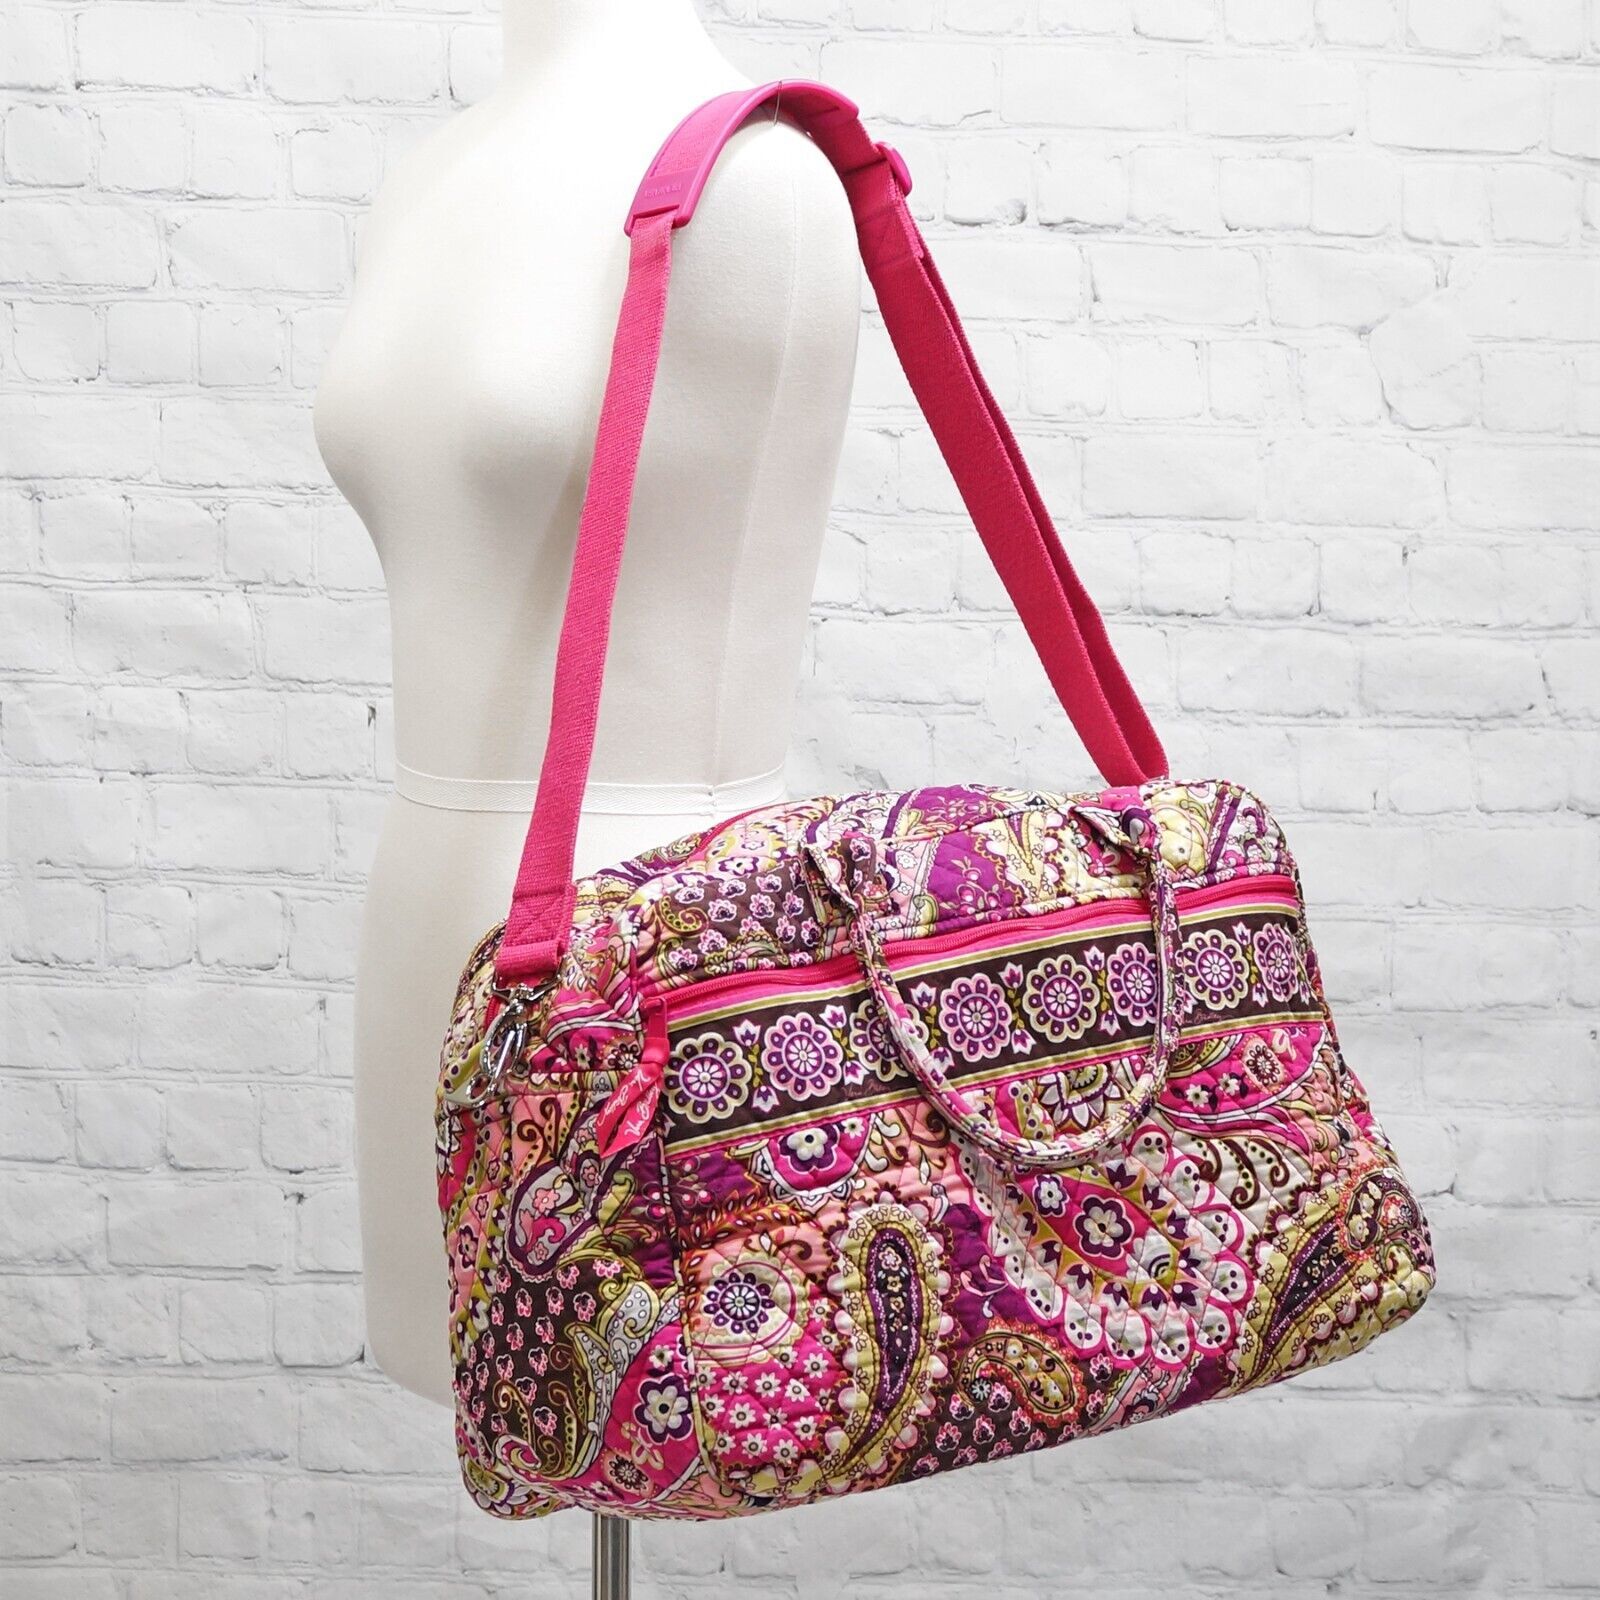 ❤️ VERA BRADLEY Very Berry Paisley Weekender Travel Bag Pink Purple - $54.99